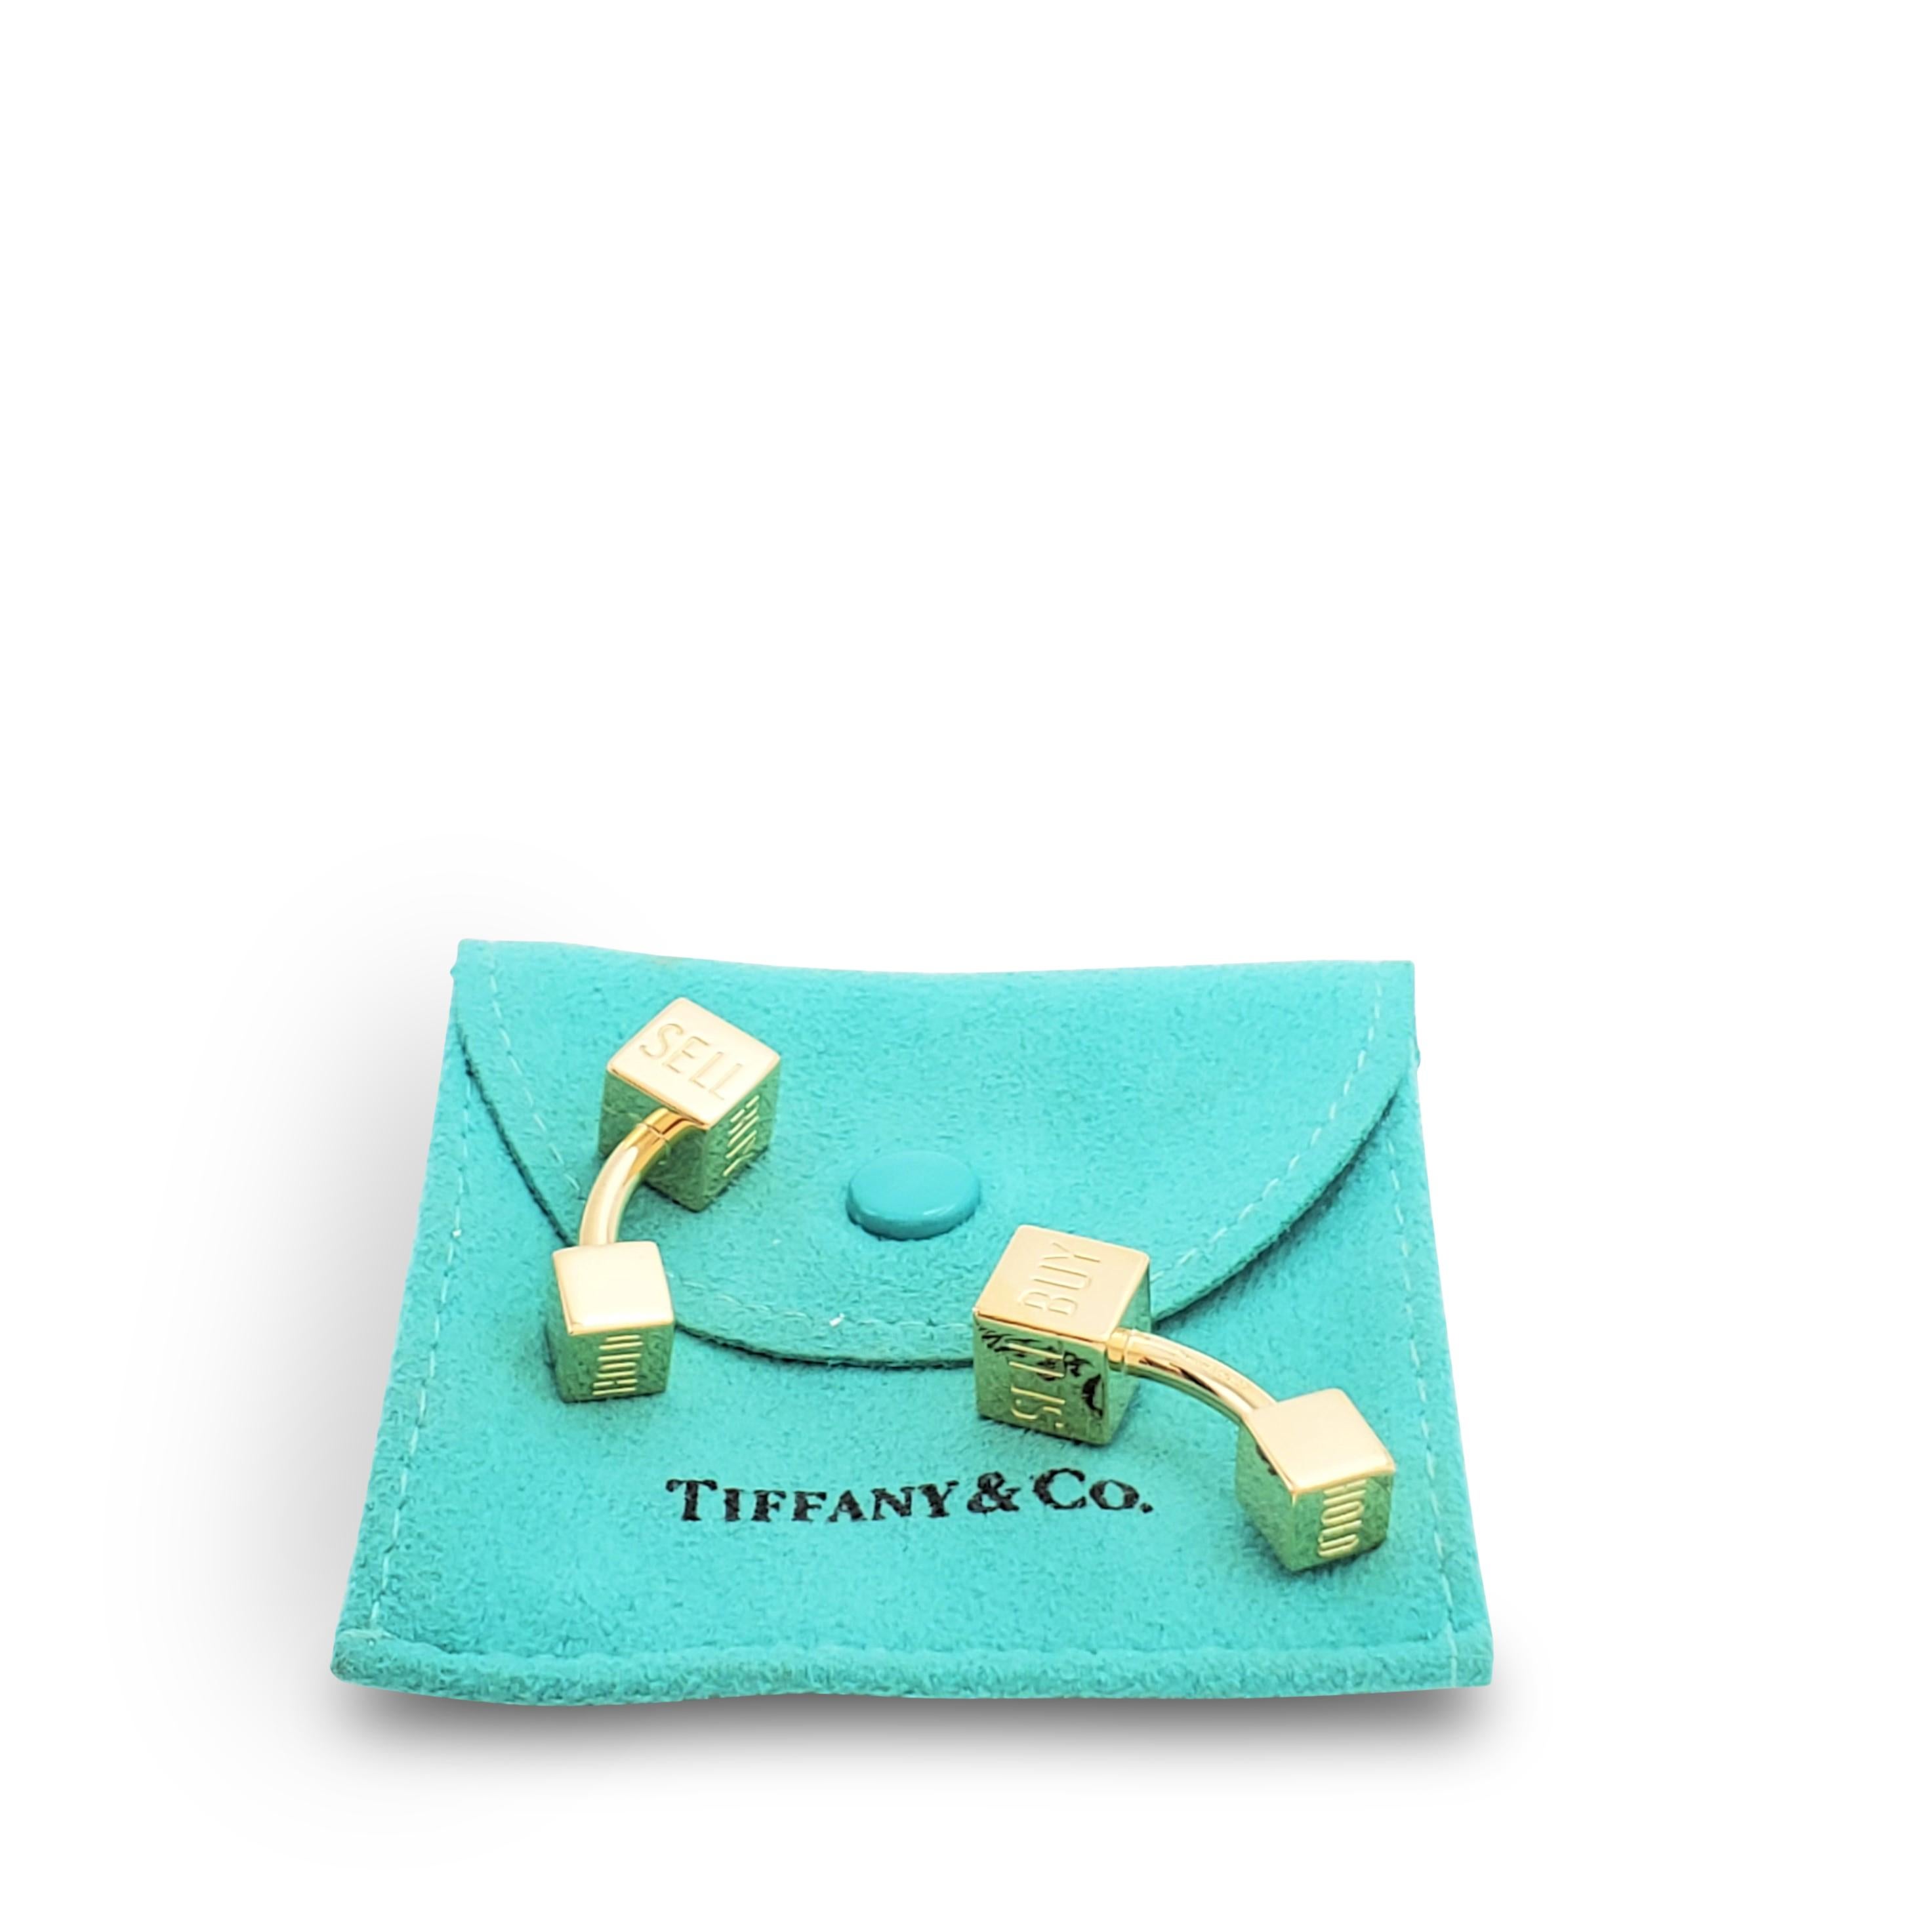 tiffany cufflinks gold